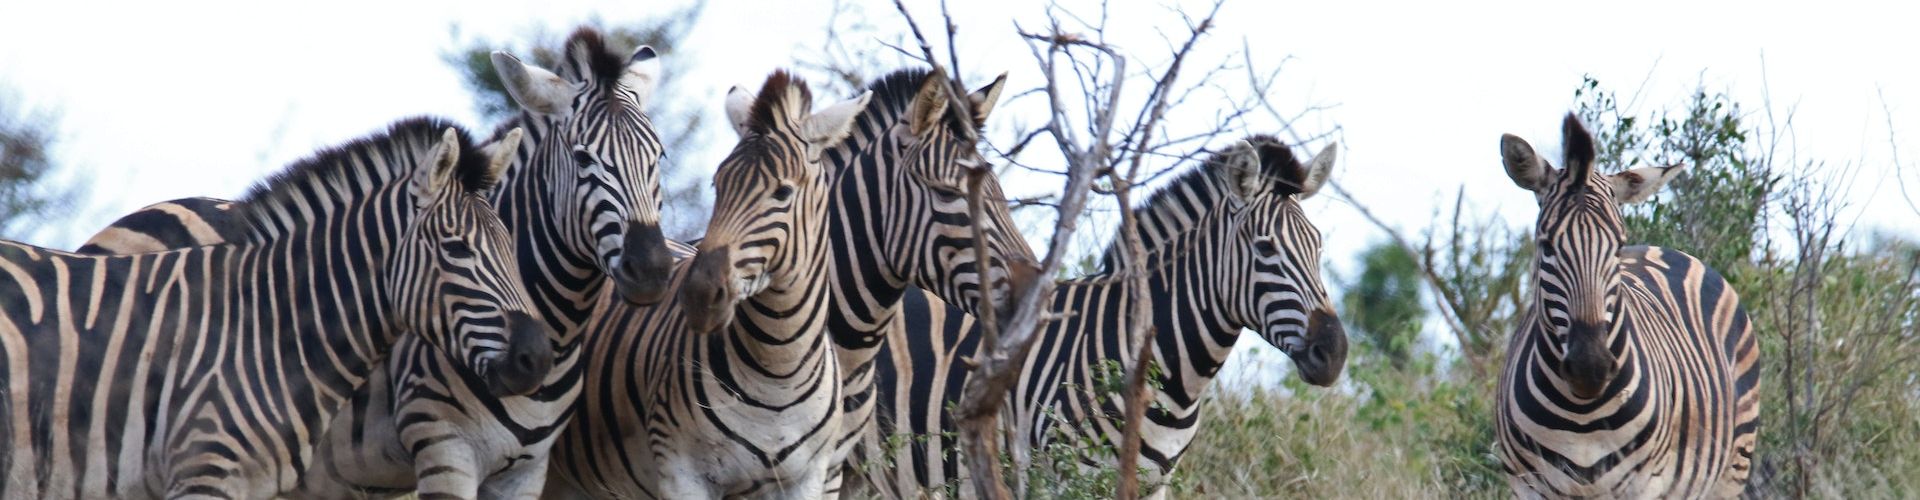 Mehrere dicht beieinander stehende Zebras in einem tansanischen Nationalpark